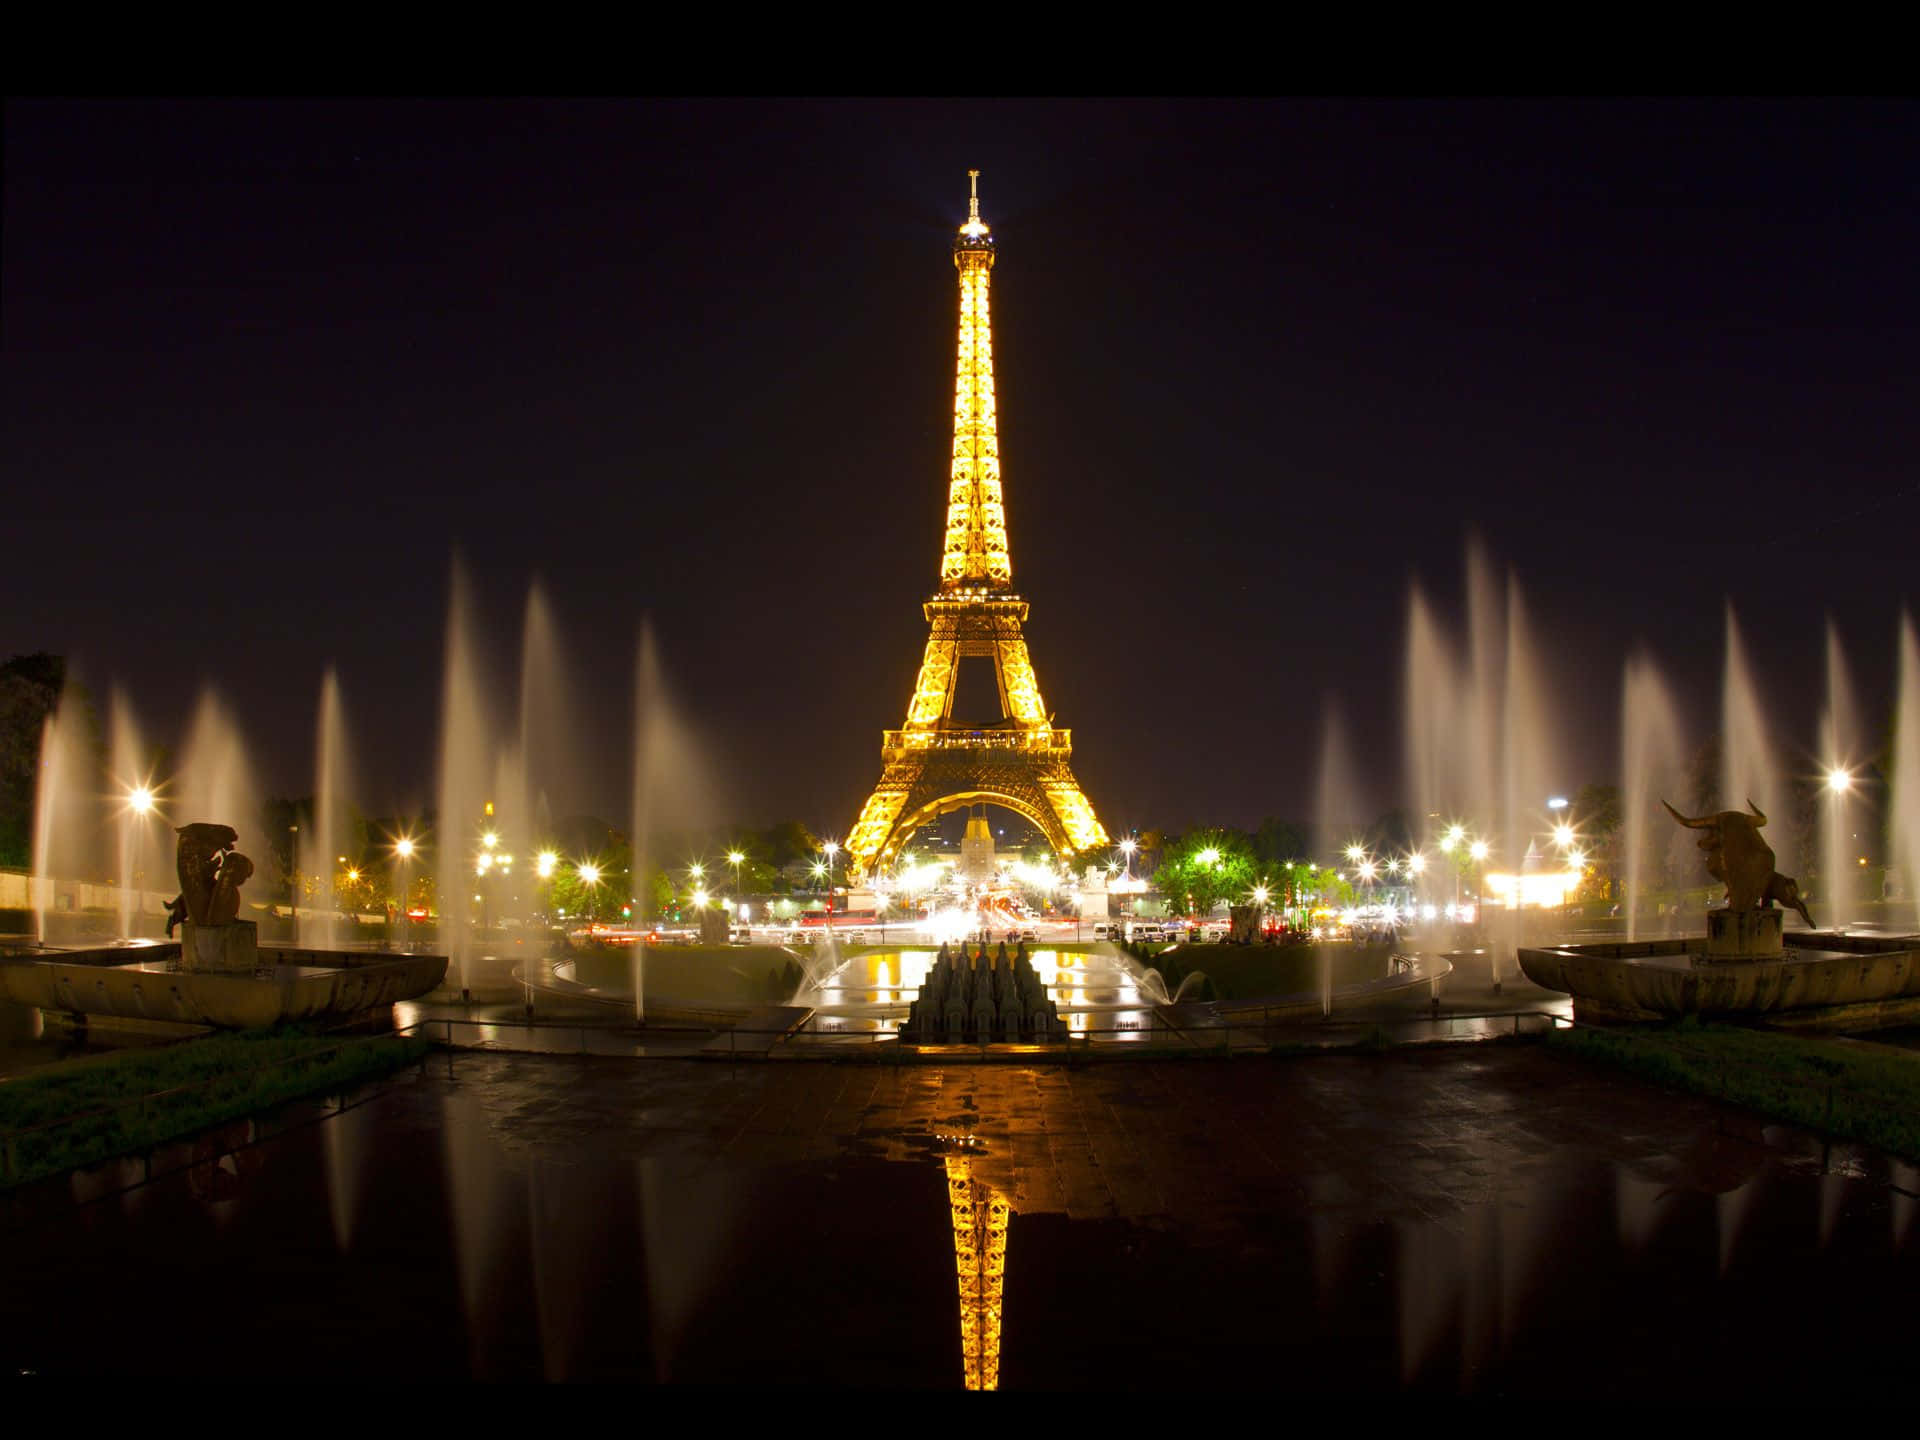 Denikoniska Och Imponerande Eiffeltornet Upplyst På Natten I Paris.